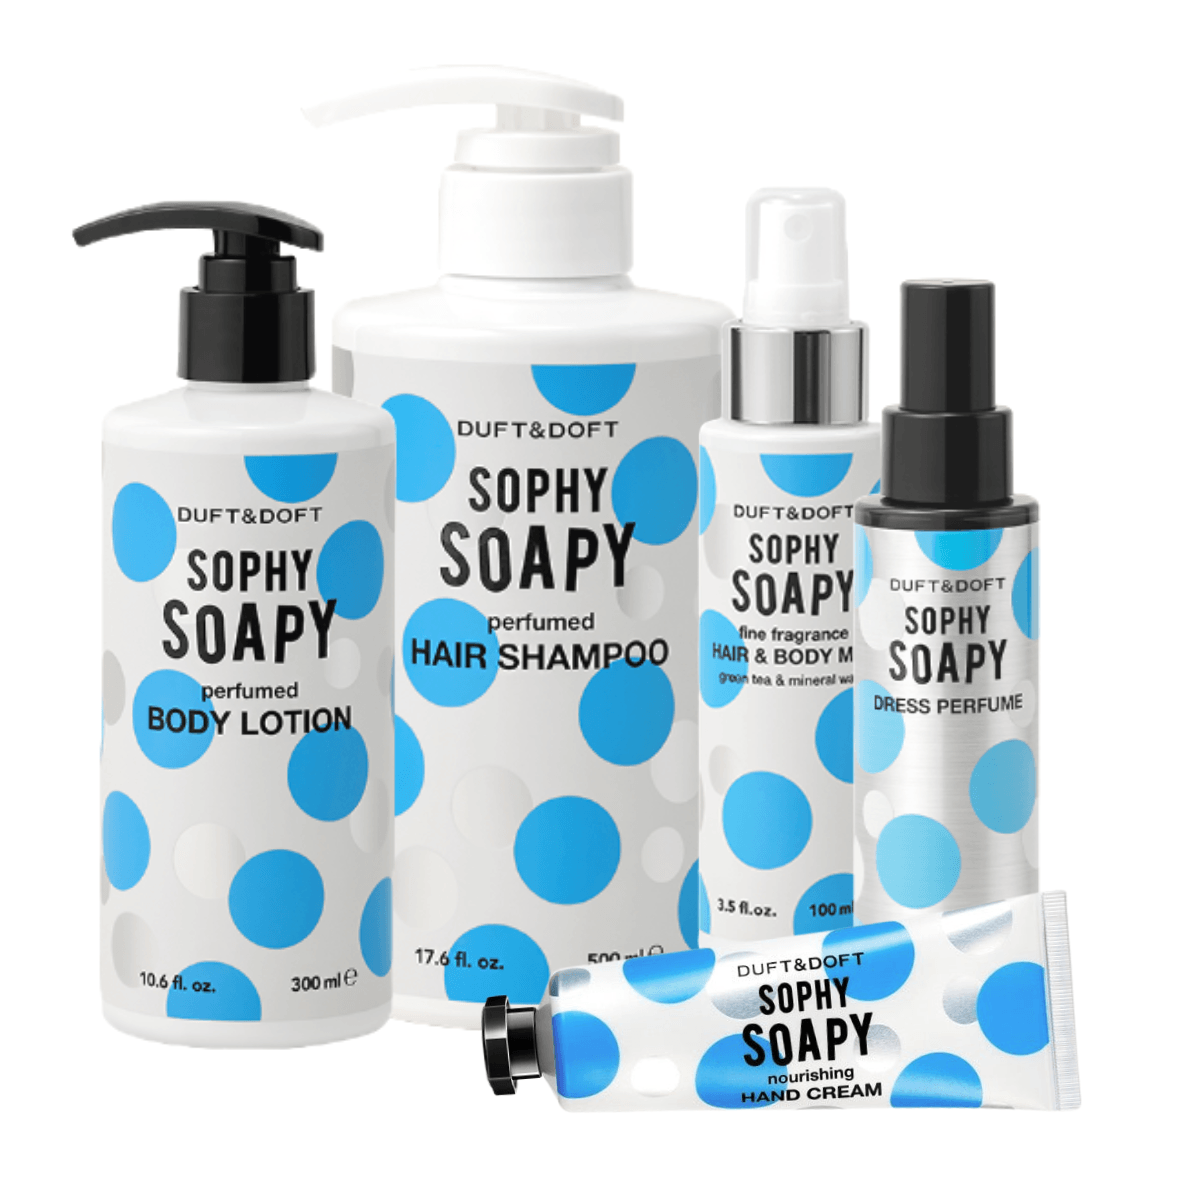 DUFT&DOFT Sophy Soapy Set of 5 - UShops